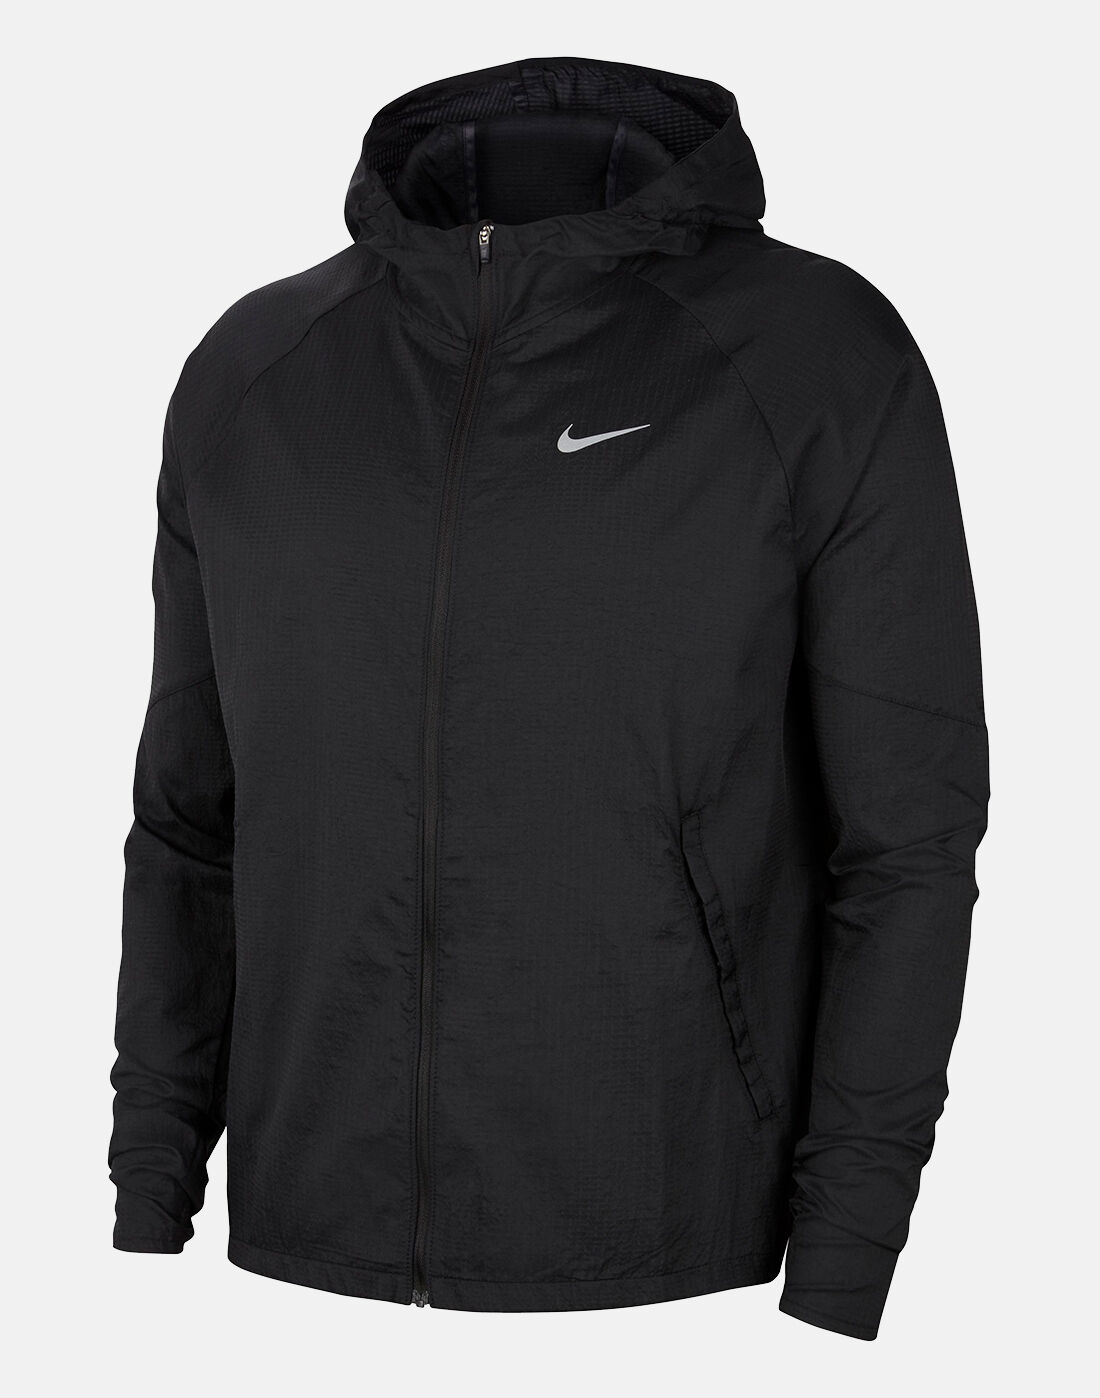 Nike Mens Essential Running Jacket 